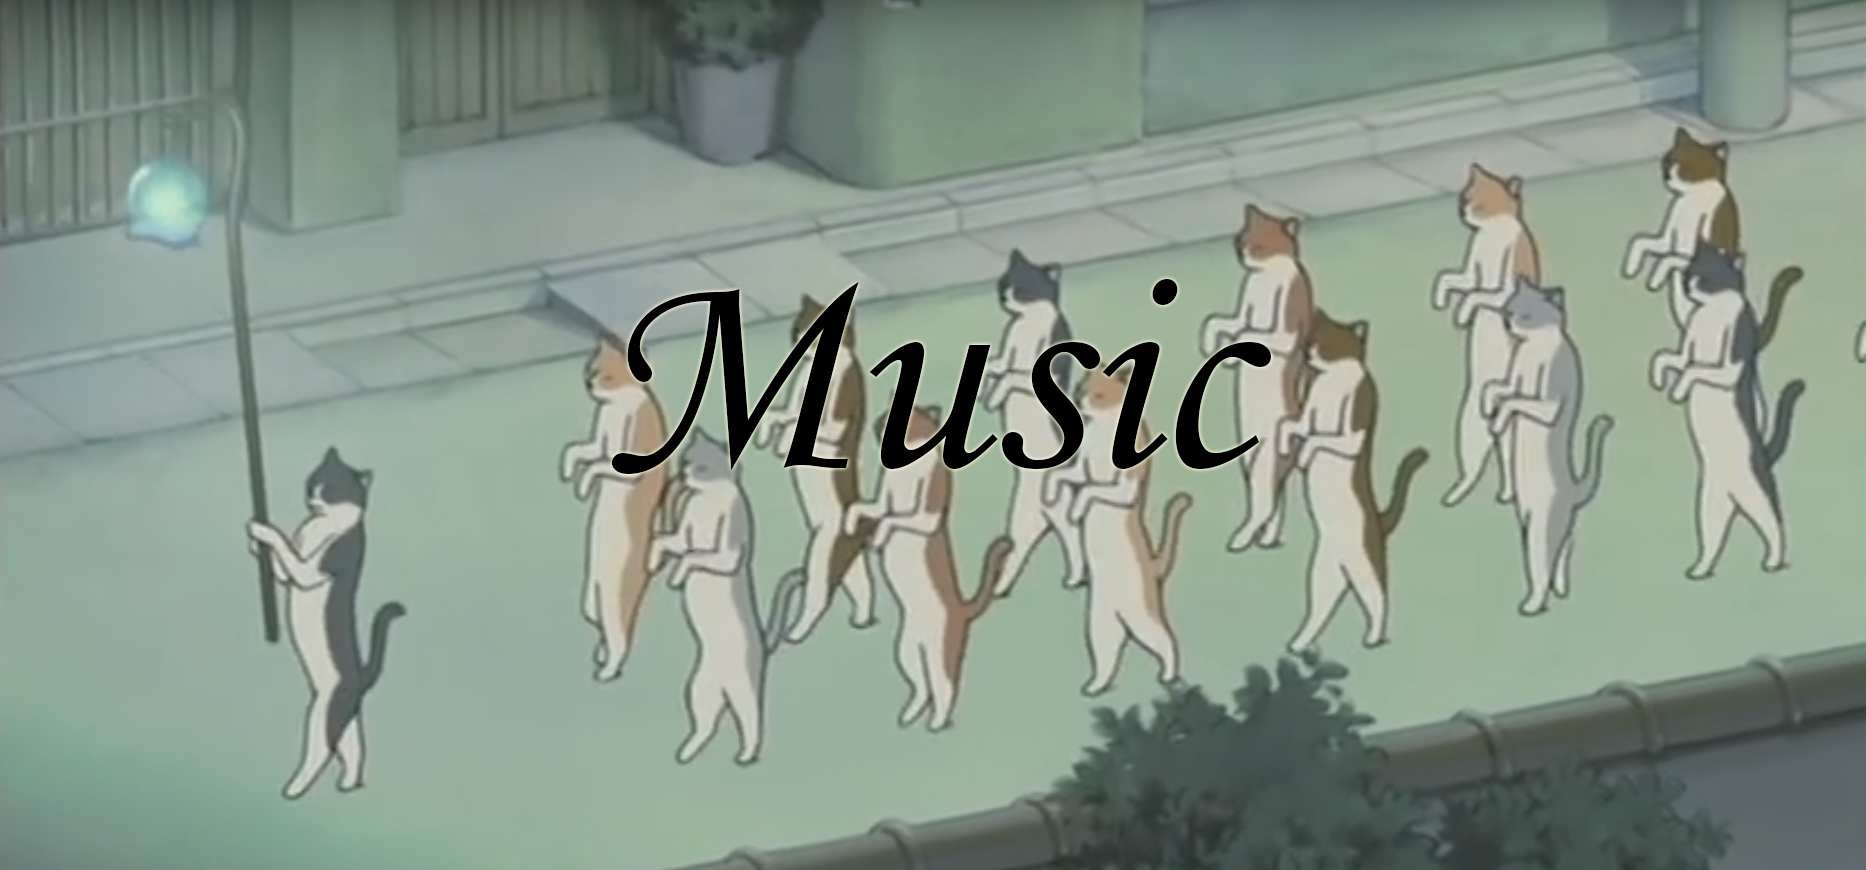 Music of Ghibli. The Cat Returns. Image Credit: Studio Ghibli.